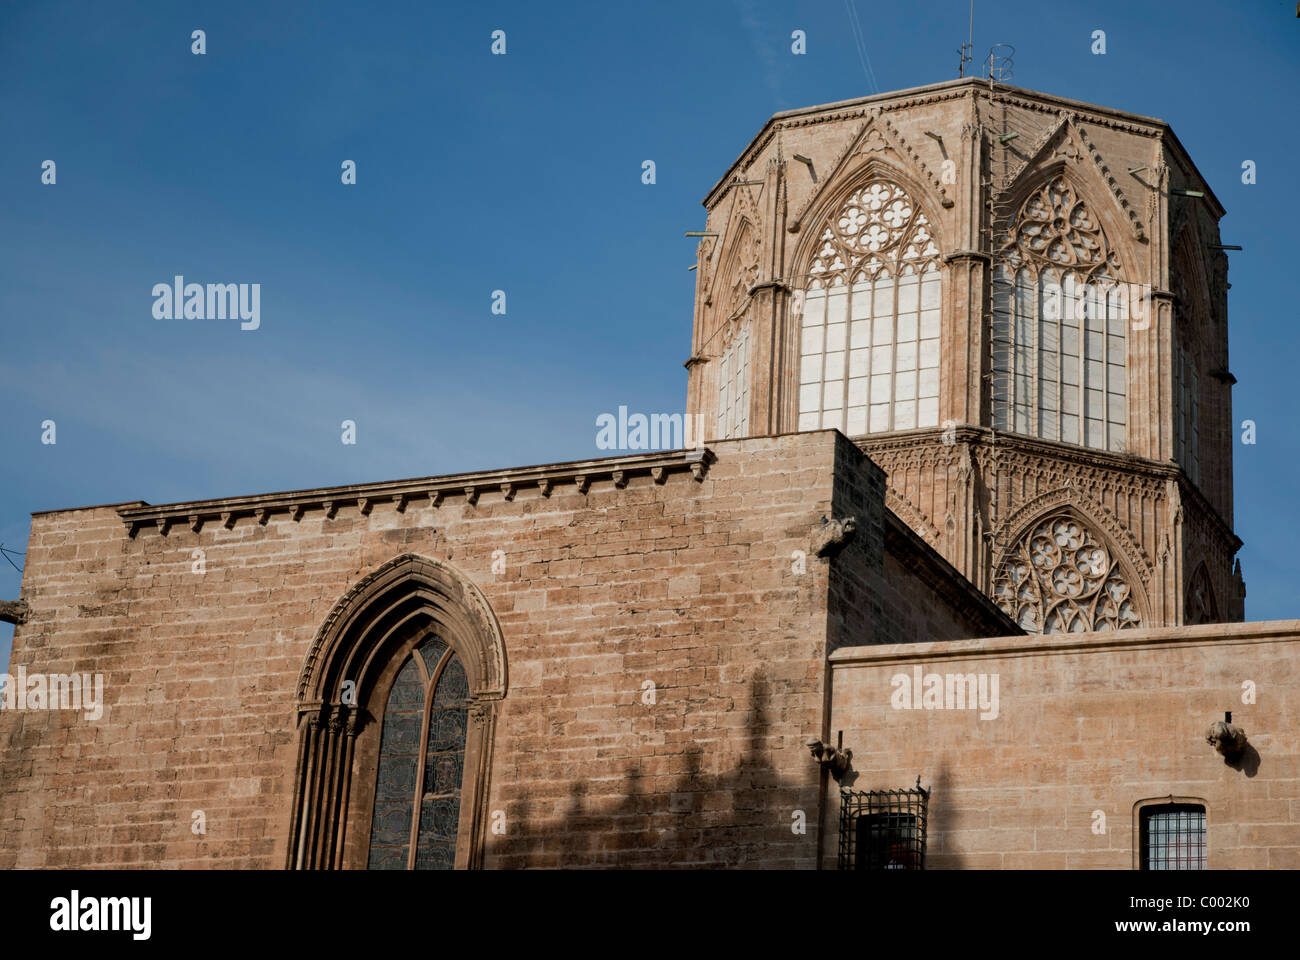 La cathédrale de la Plaza de la Reina, Espagne Banque D'Images